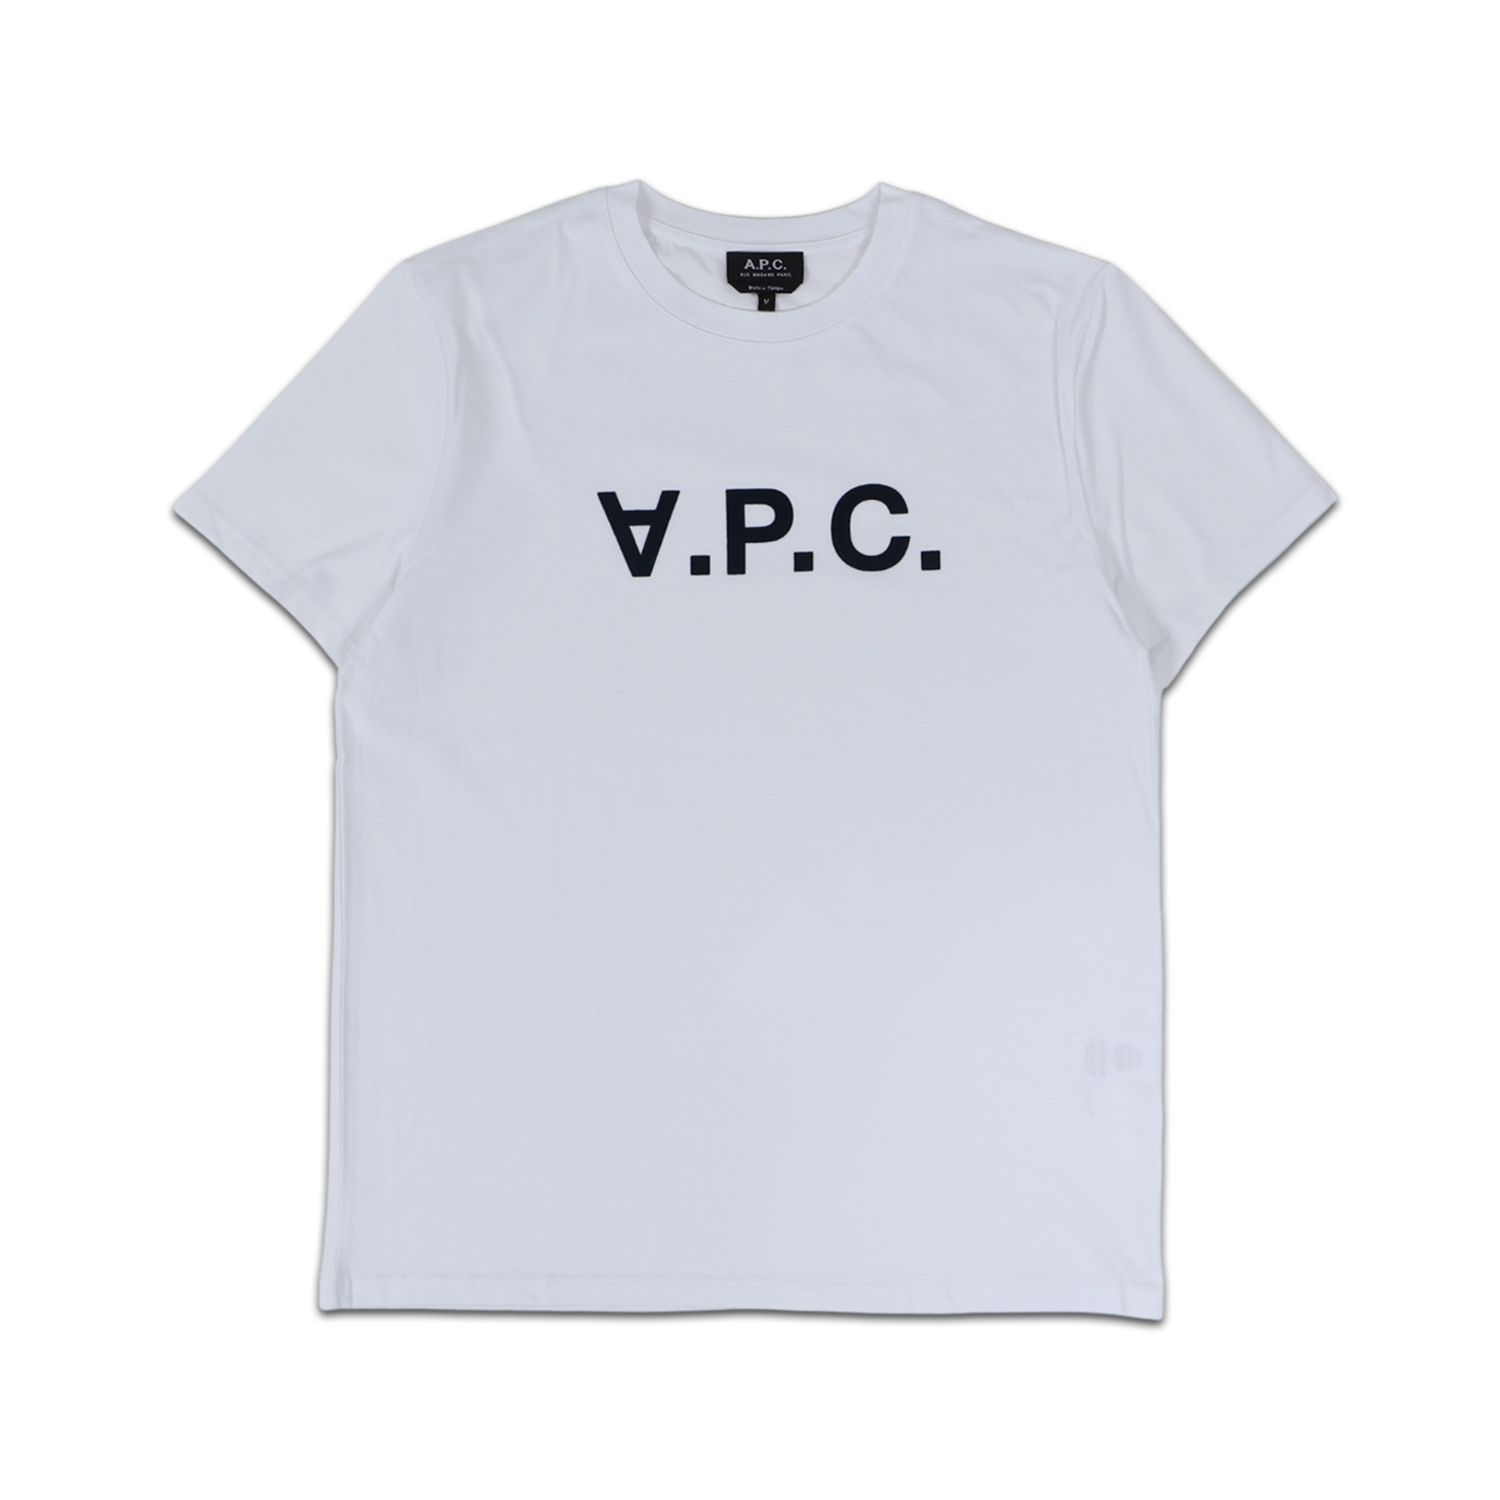 A.P.C. アーペーセー Tシャツ 半袖 メンズ V.P.C. ダーク ネイビー COBQX-H2...